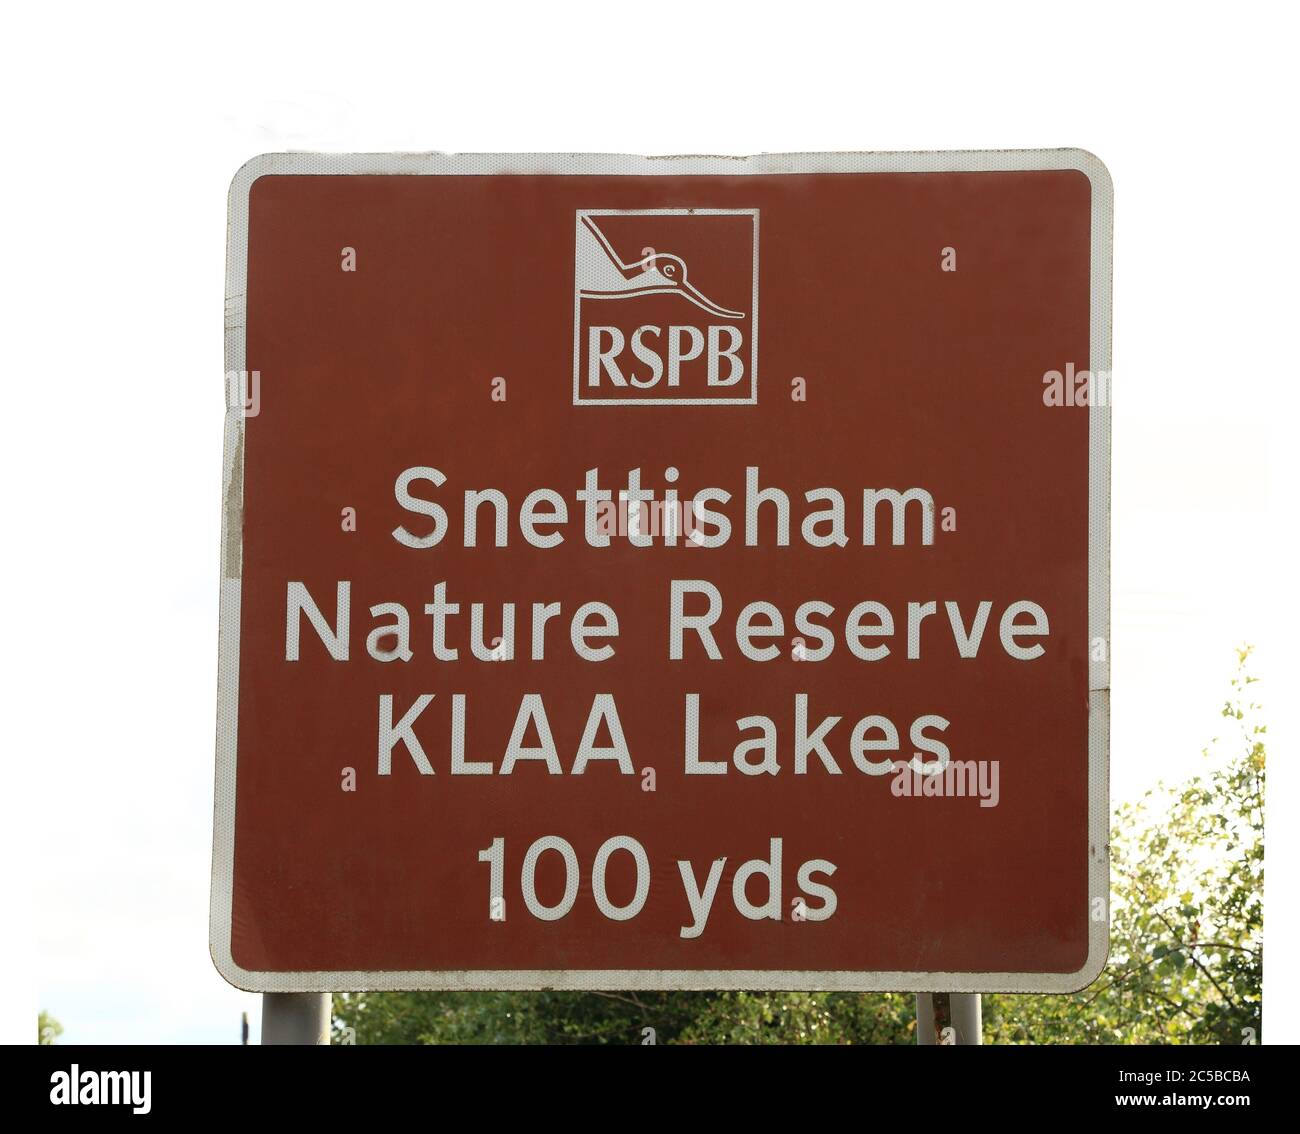 RSPB, Réserve naturelle, Snettisham, panneau, Norfolk, Angleterre, Royaume-Uni Banque D'Images